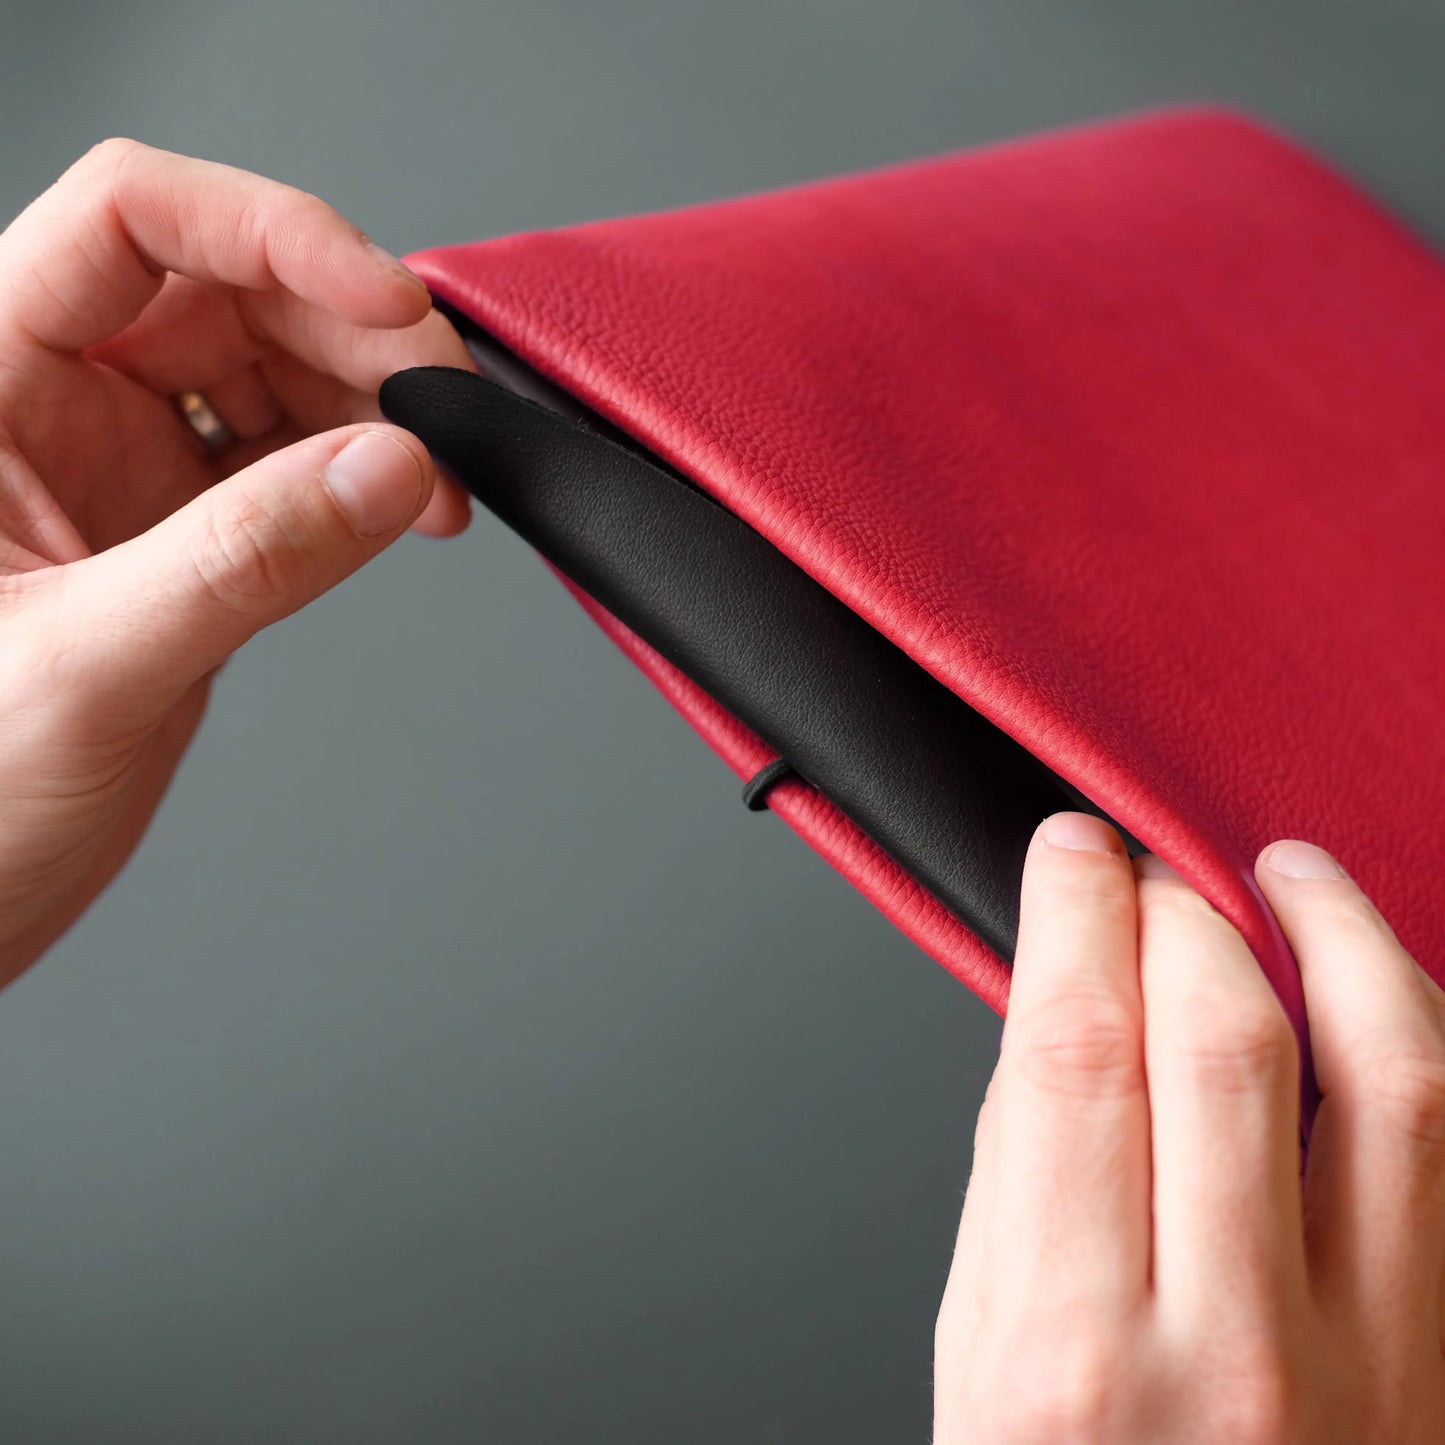 schwarze Lederklappe wird in rote Notebook Hülle aus Leder gesteckt